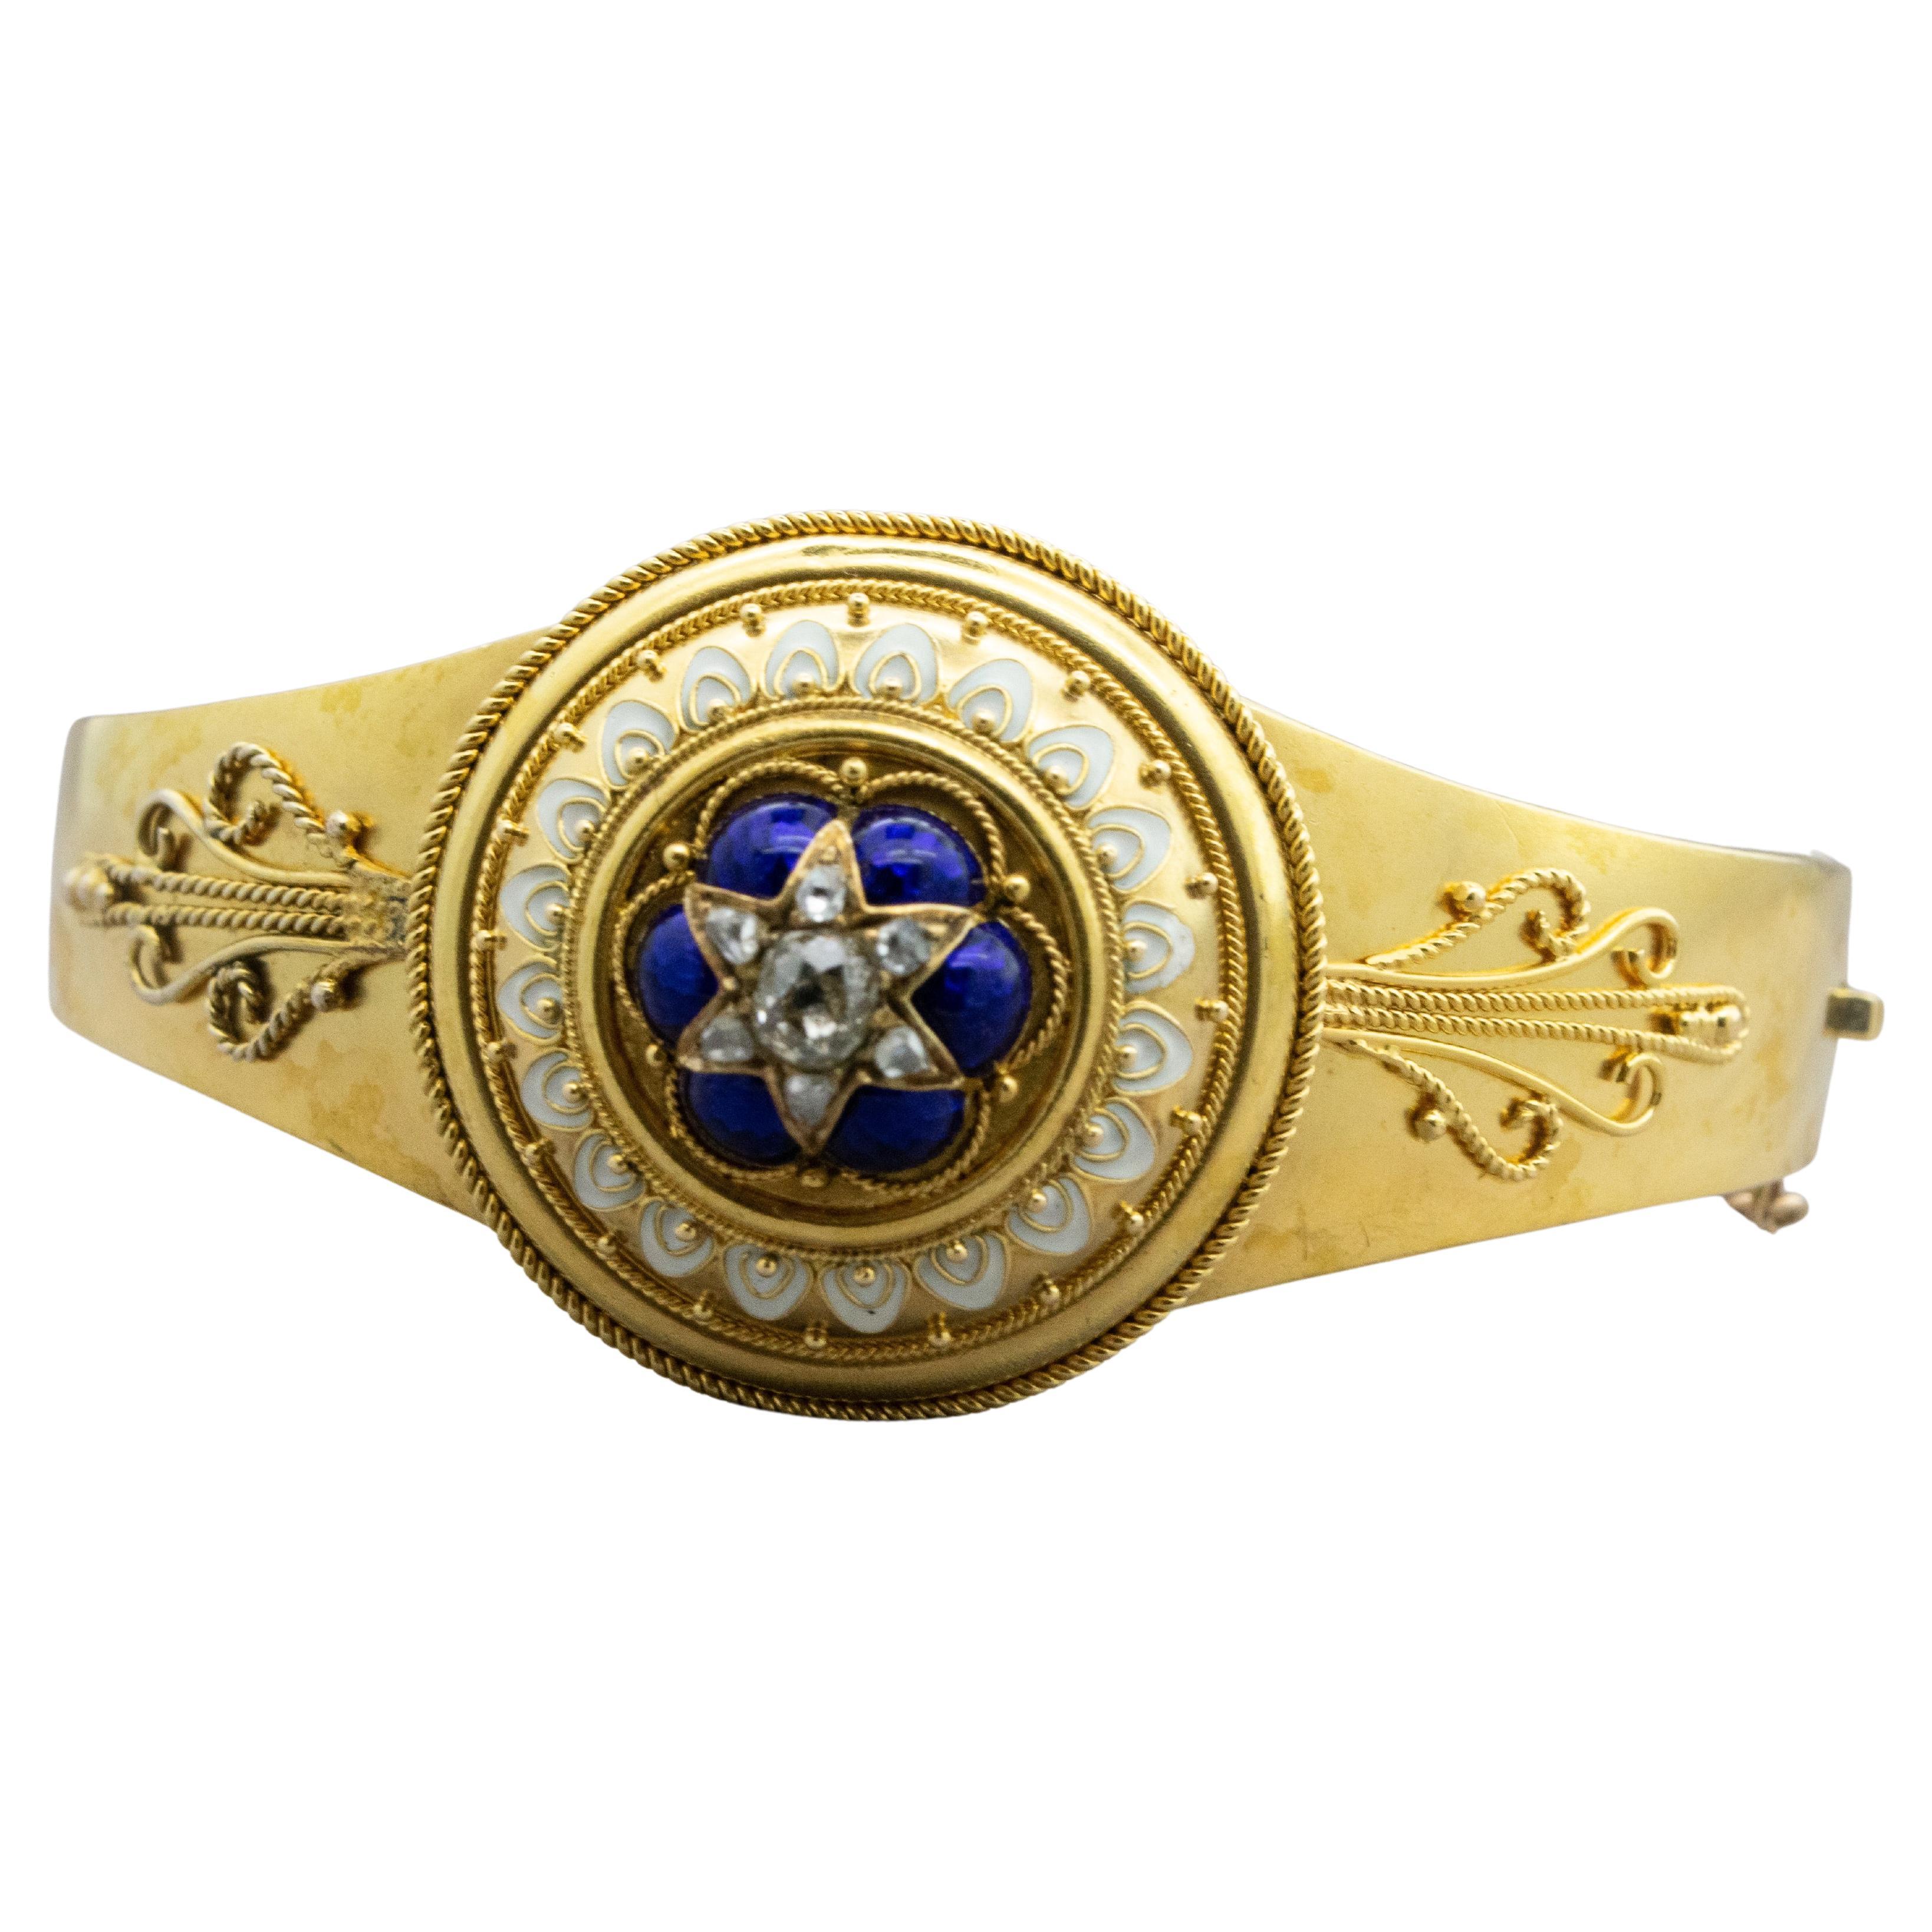 Bracelet La Belle Époque, Etruscan Revival, Gold, Diamonds, Enamel, Filigree For Sale